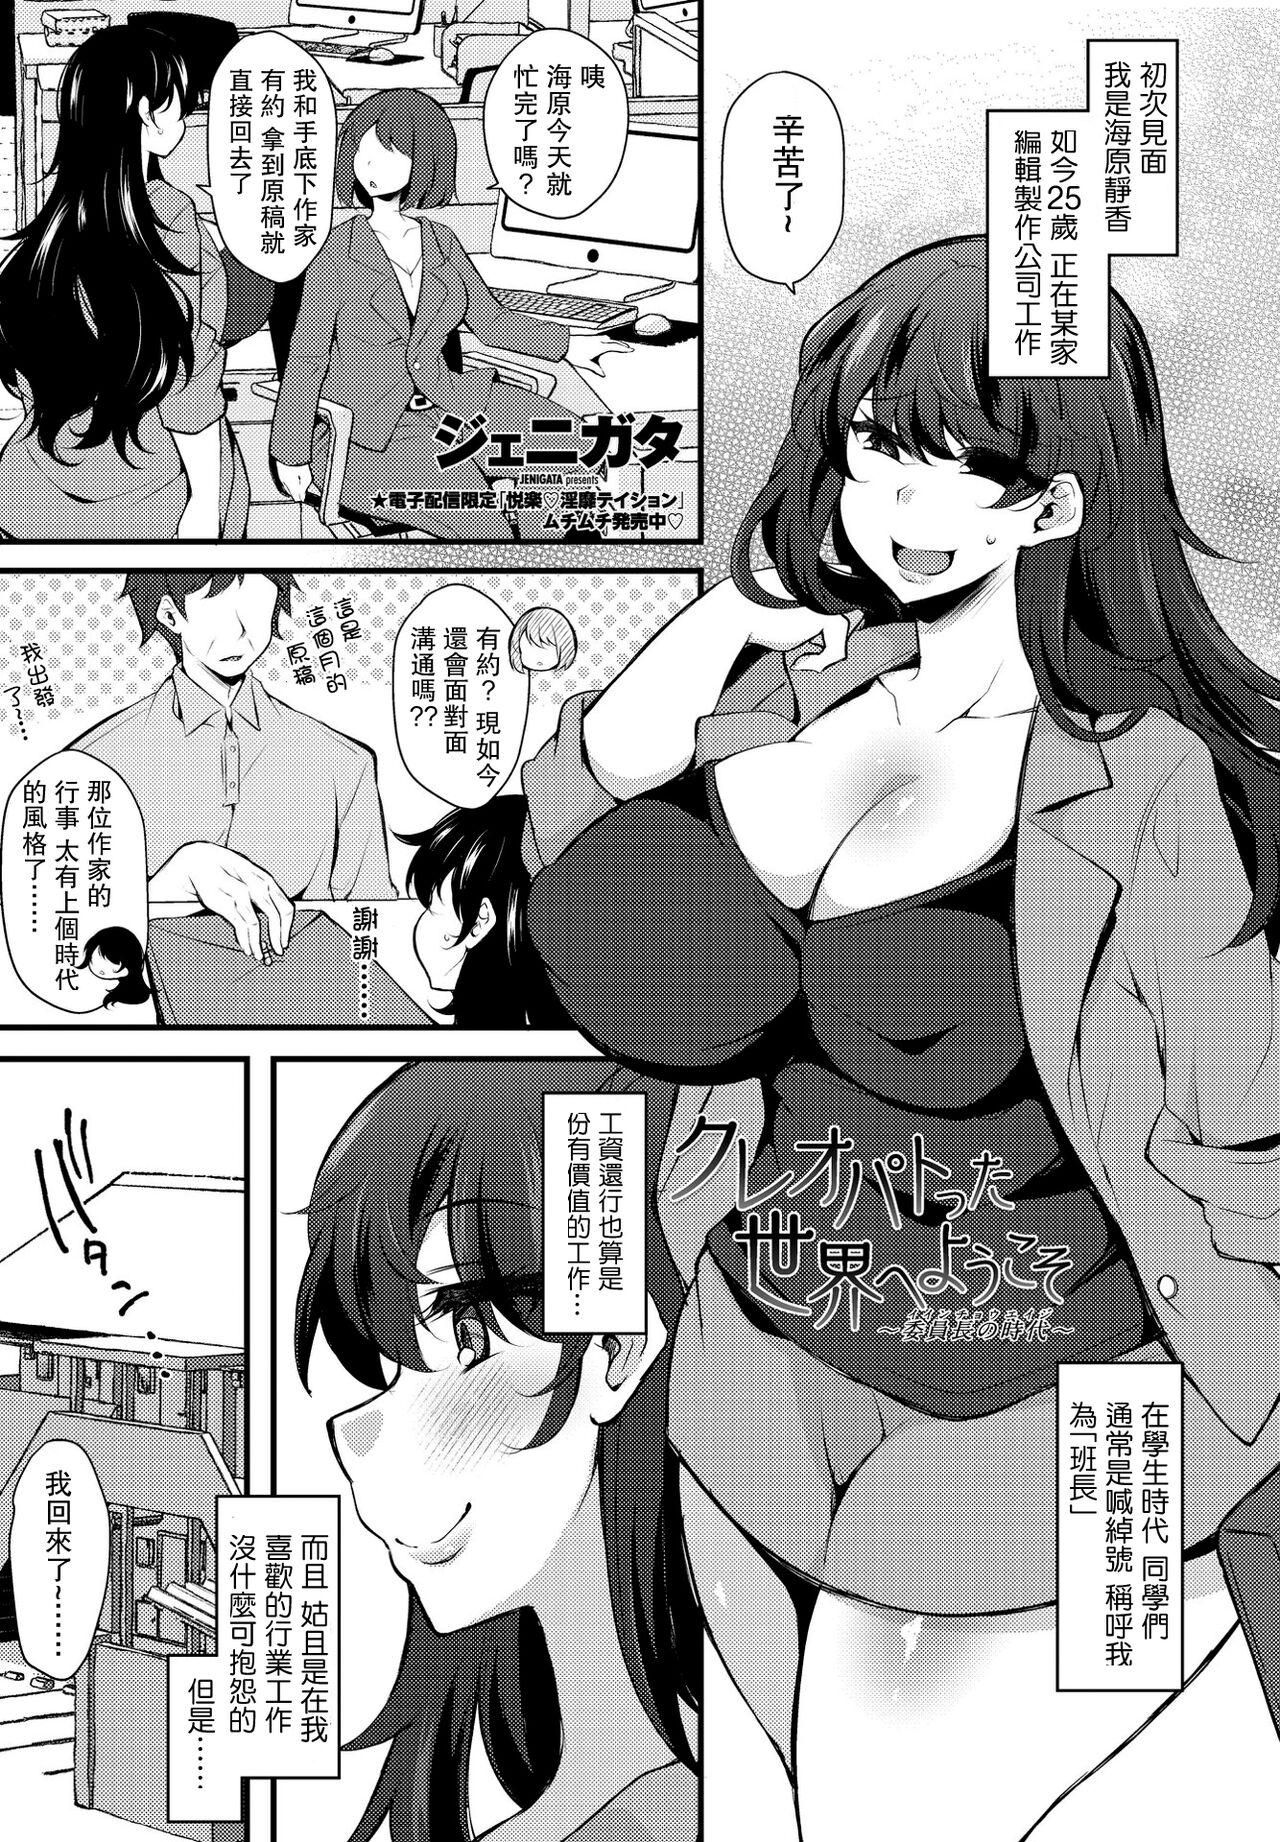 Spanking Kureopatotta Sekai e Youkoso 4 Petite Girl Porn - Page 1